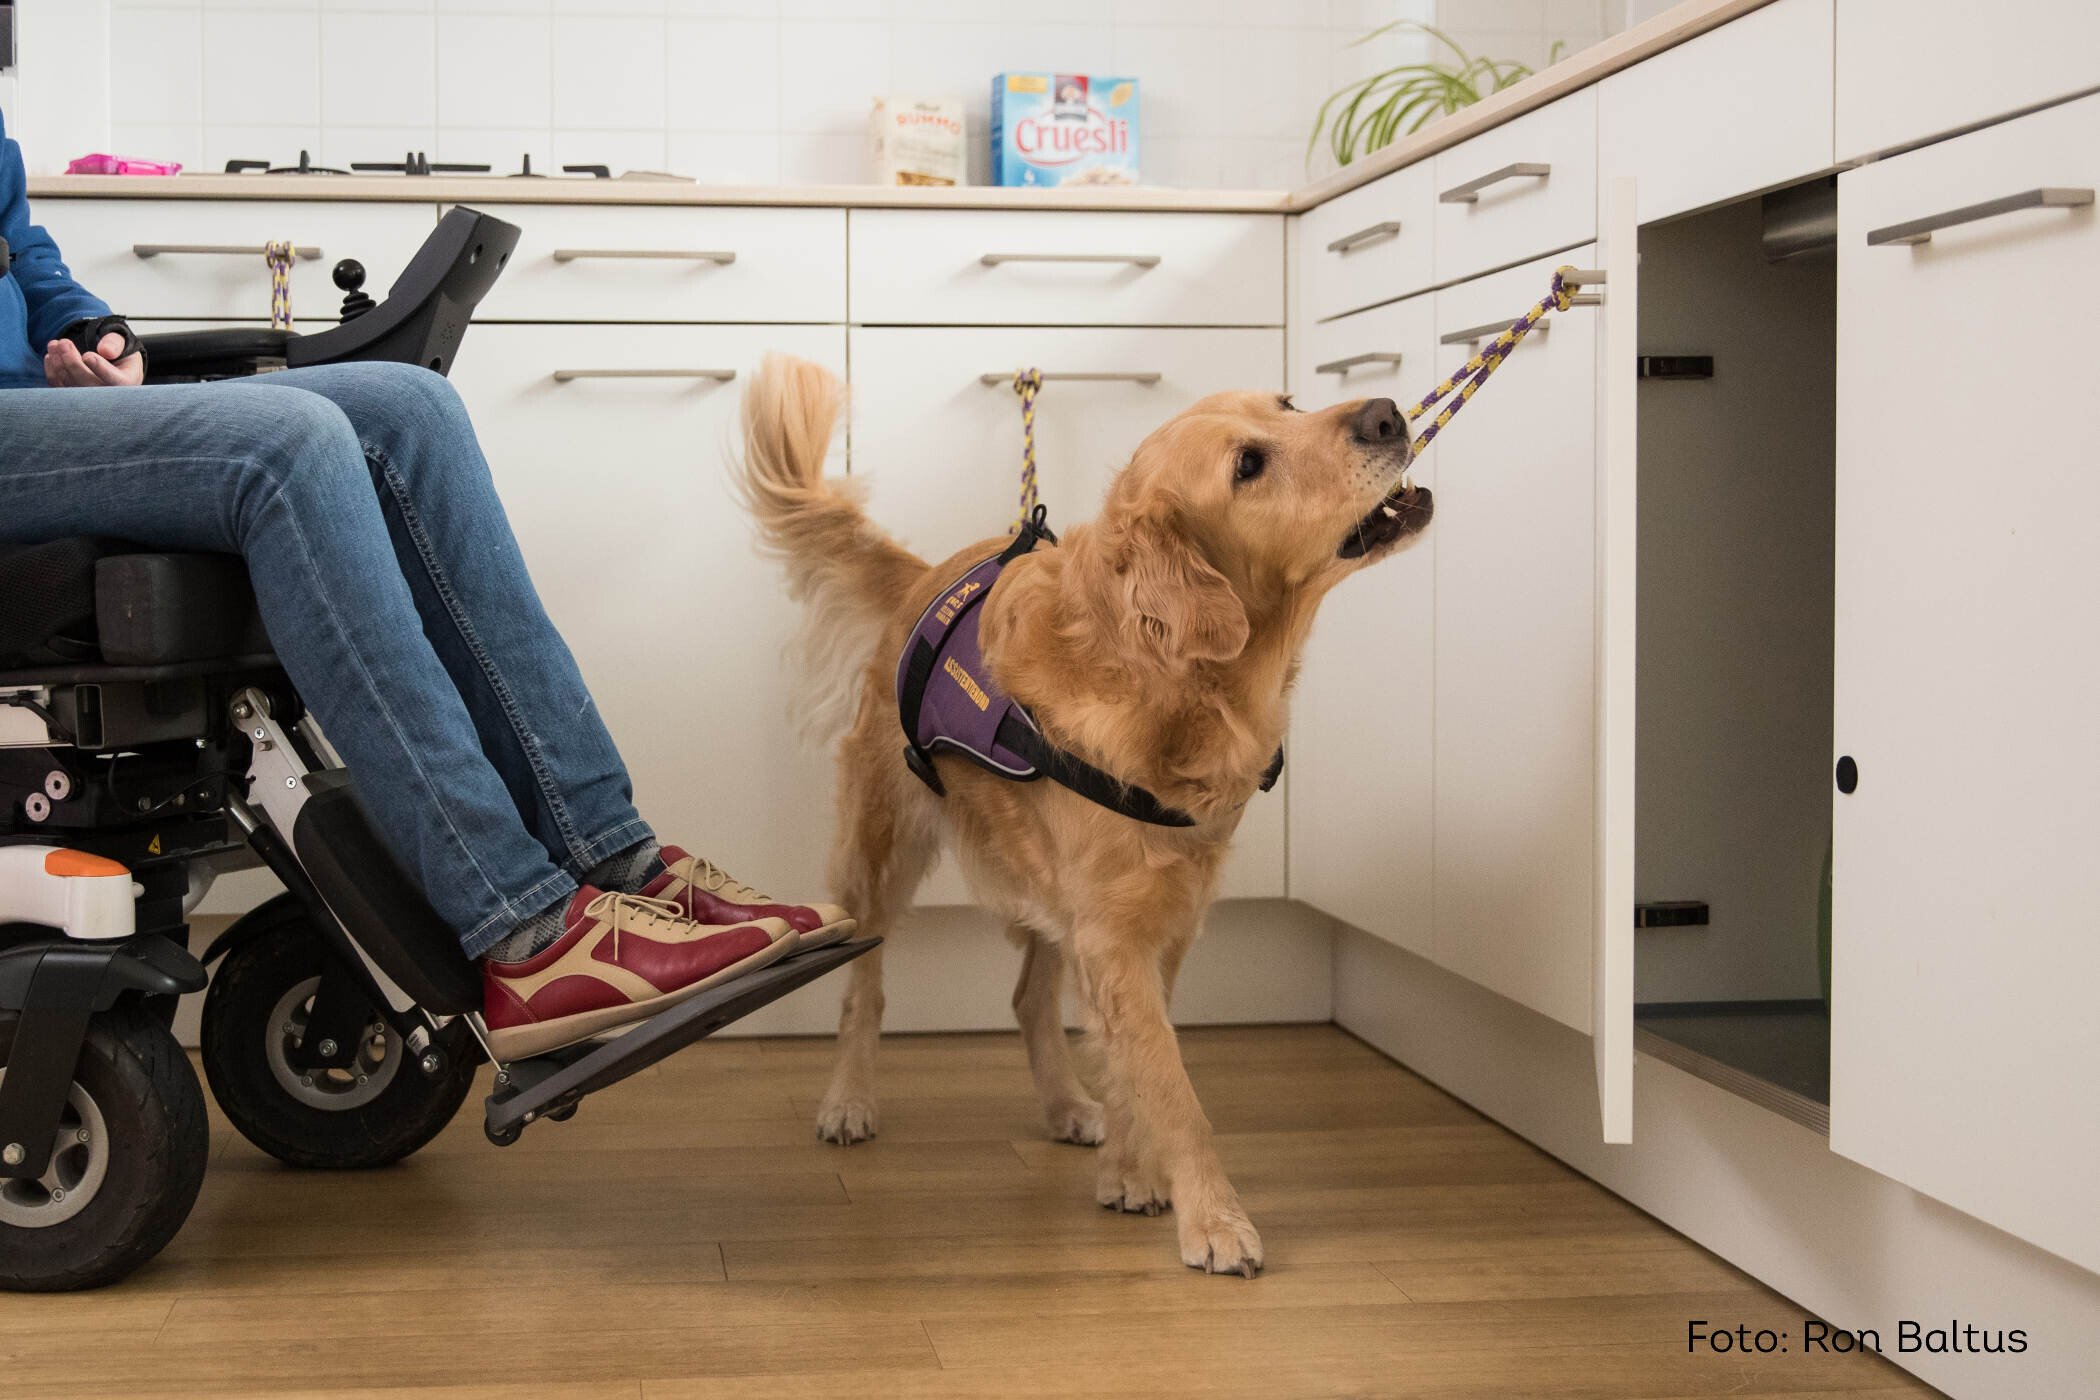 Assistentiehond van KNGF Geleidehonden opent keukenkastje voor haar baas in rolstoel